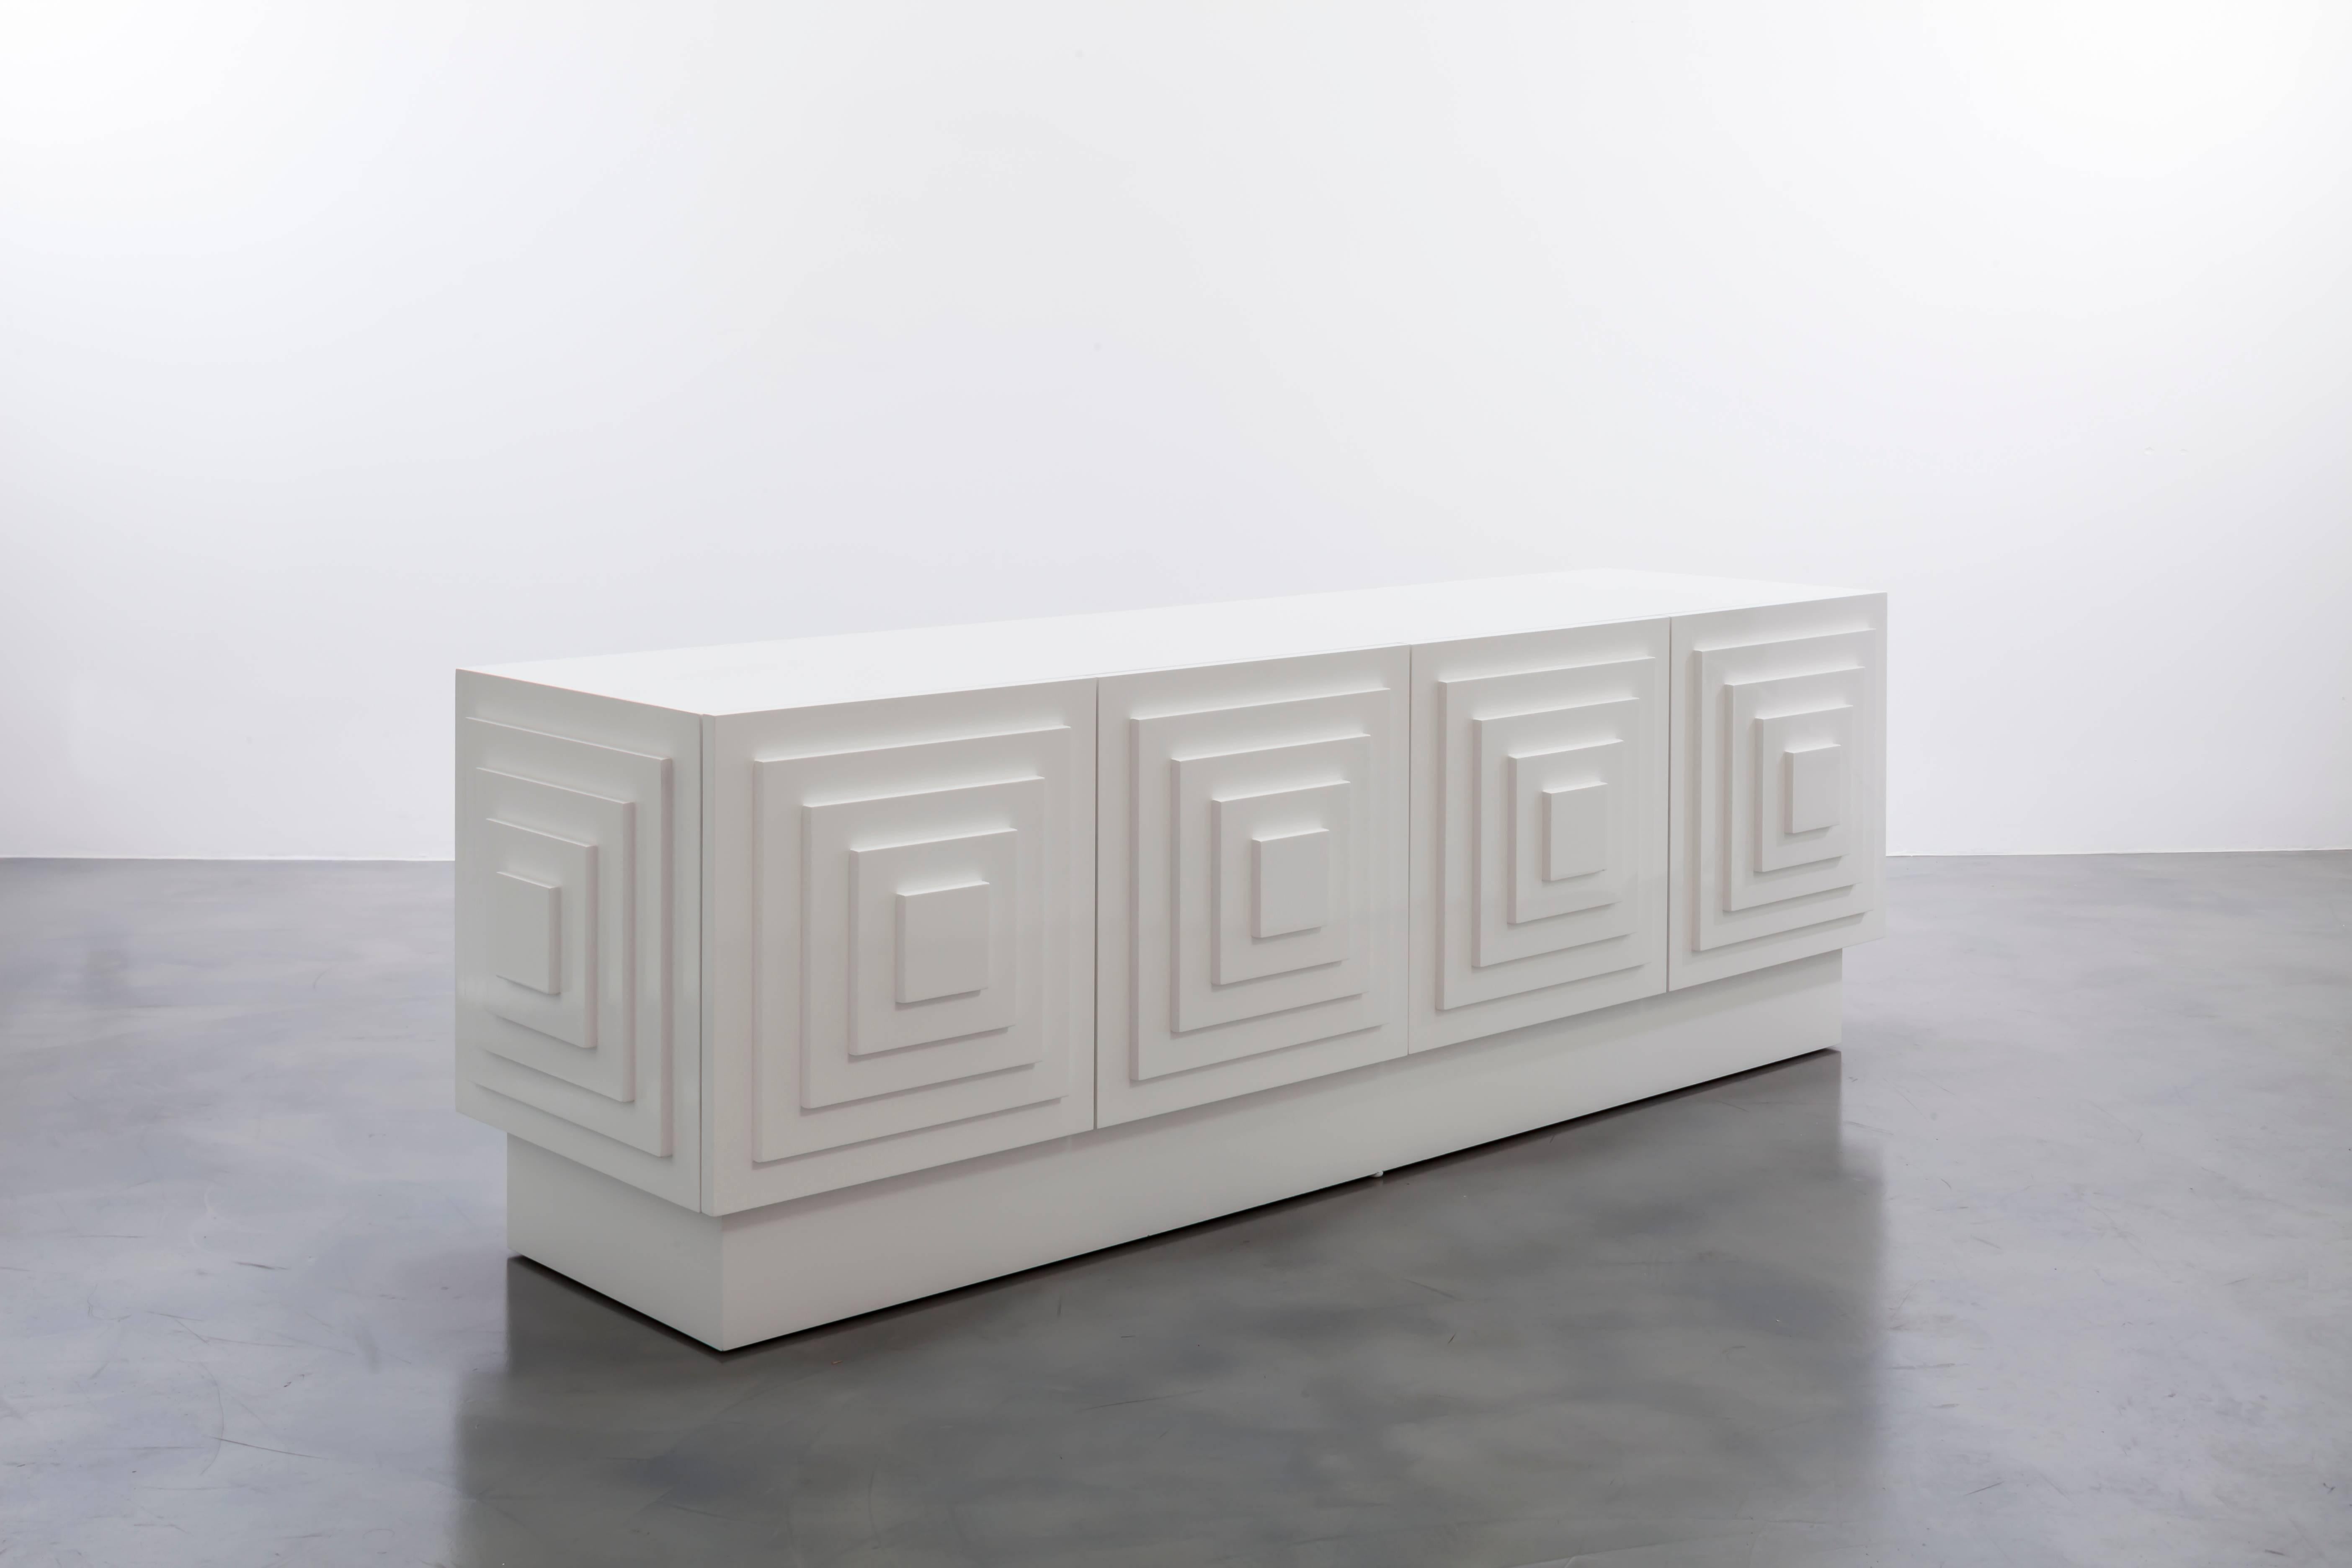 GAULTIER MEDIA CREDENZA - Cabinet géométrique moderne en laque blanche

La crédence multimédia Gaultier est un meuble élégant et fonctionnel conçu pour améliorer vos capacités de stockage et d'affichage multimédia. Il associe une élégante finition